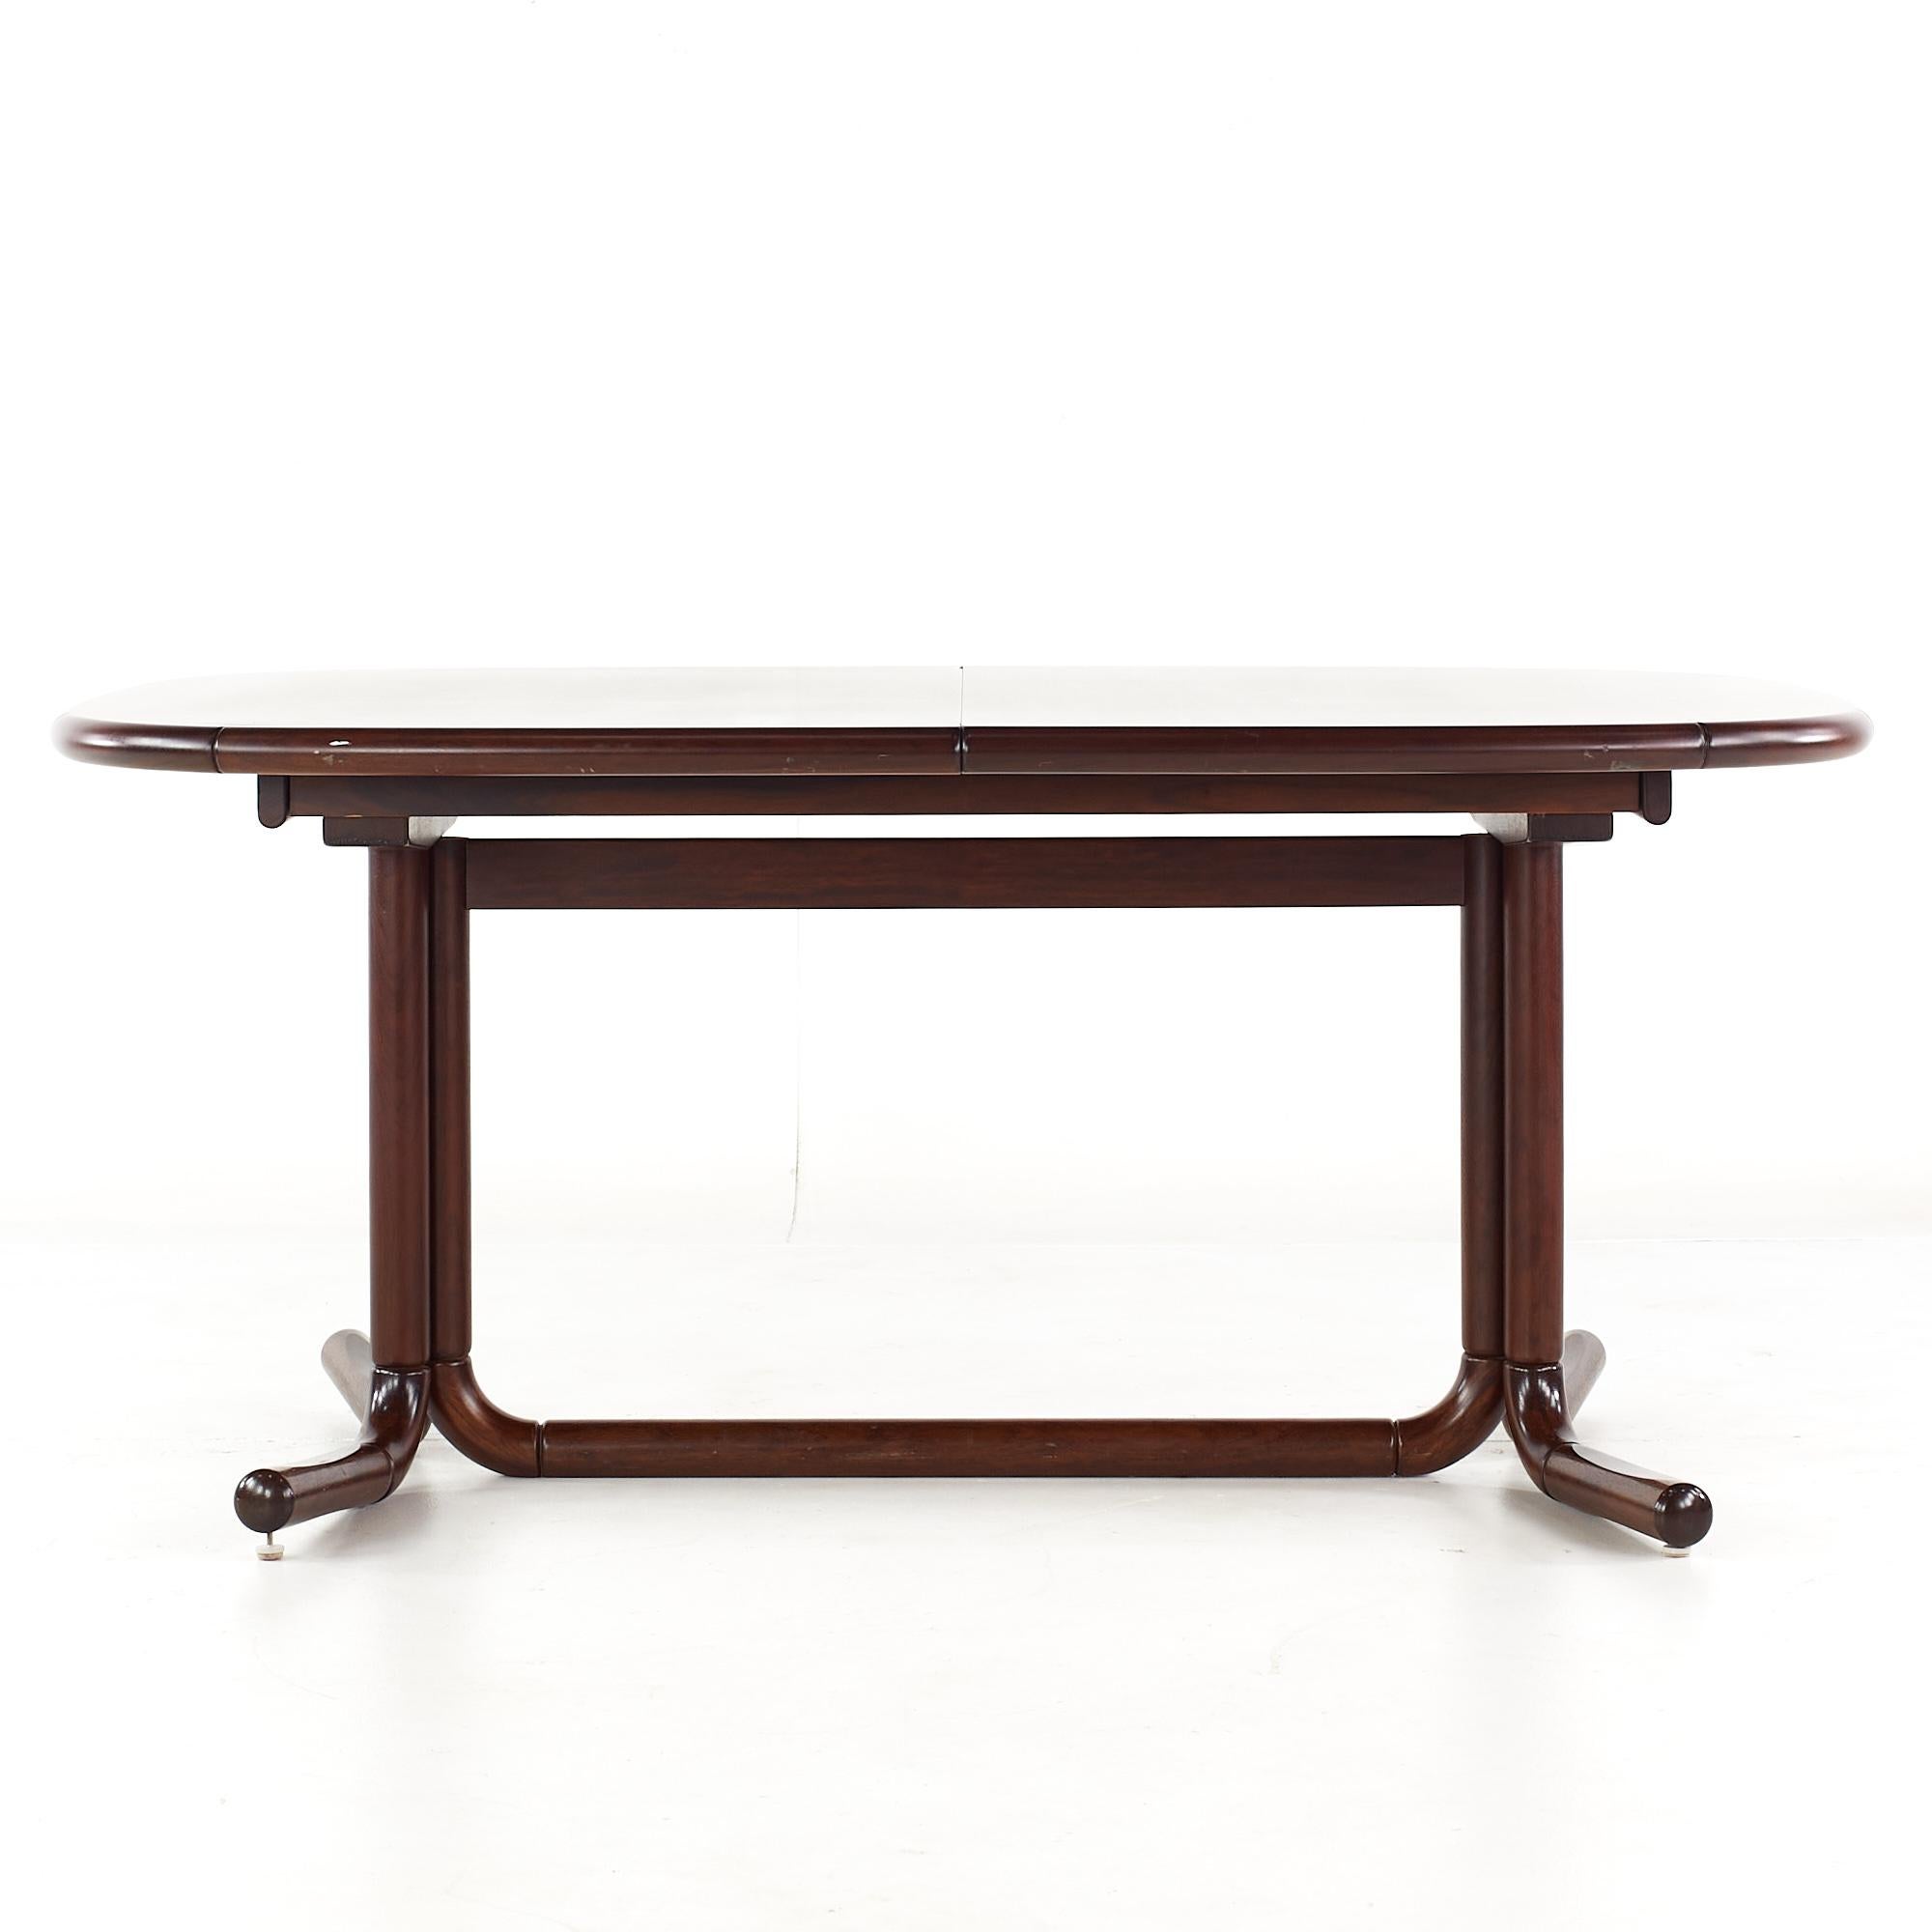 Dänischer Palisander-Esstisch aus der Mitte des Jahrhunderts mit 2 Flügeln

Dieser Tisch misst: 63 breit x 19,5 tief x 28 hoch, mit einem Stuhl Abstand von 25 Zoll, jedes Blatt misst 19,5 Zoll breit, so dass eine maximale Tischbreite von 82,5